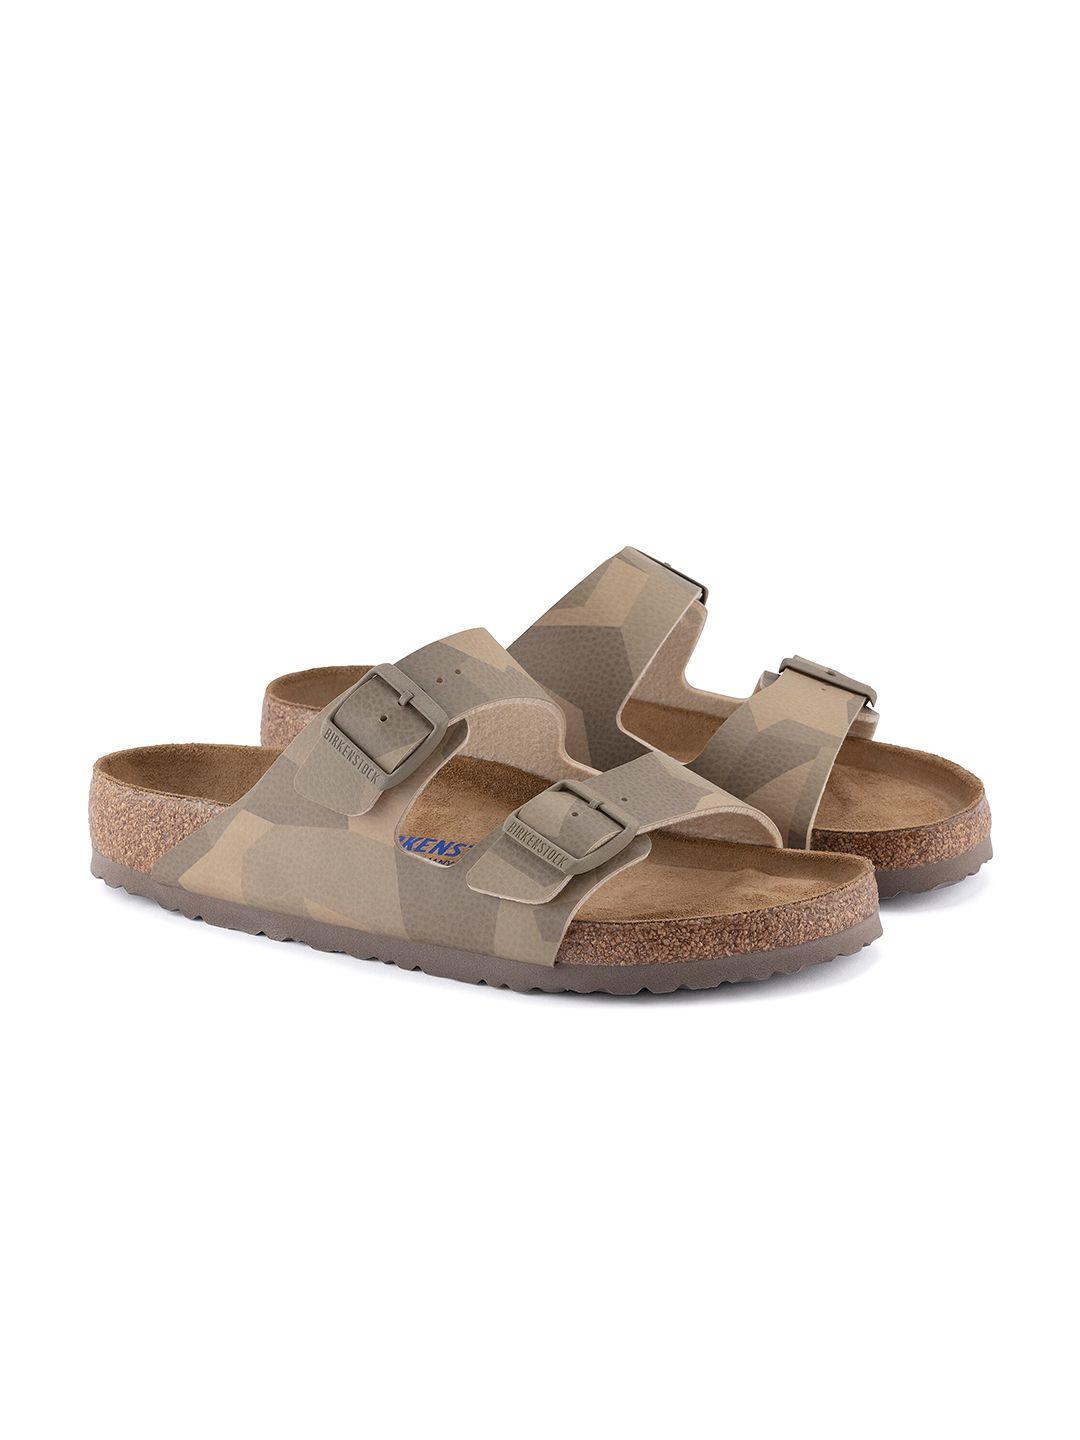 birkenstock arizona narrow widthtwo-strap comfort sandals